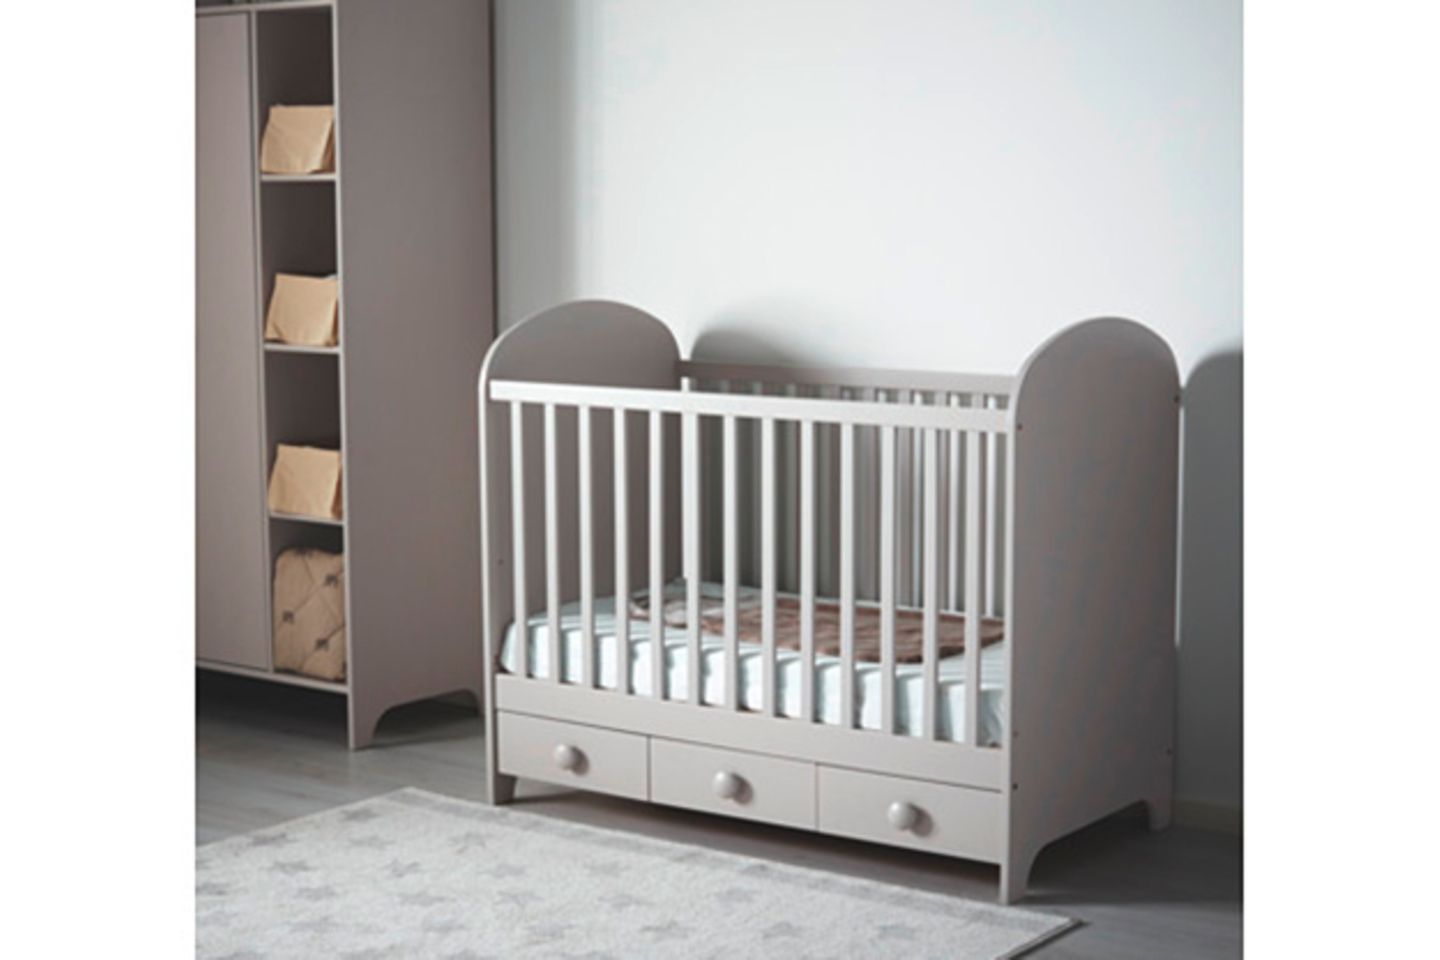 Dieses hübsche Babybett in grau von Ikea hat praktische Schubladen in denen Bettbezüge, Schmusetücher & Co. verstaut werden können. Wie üblich kann der Bettboden in zwei Höhen montiert werden. Bei Bedarf kann eine Gitterseite abmontiert werden, damit Dein Kind alleine aufstehen kann.